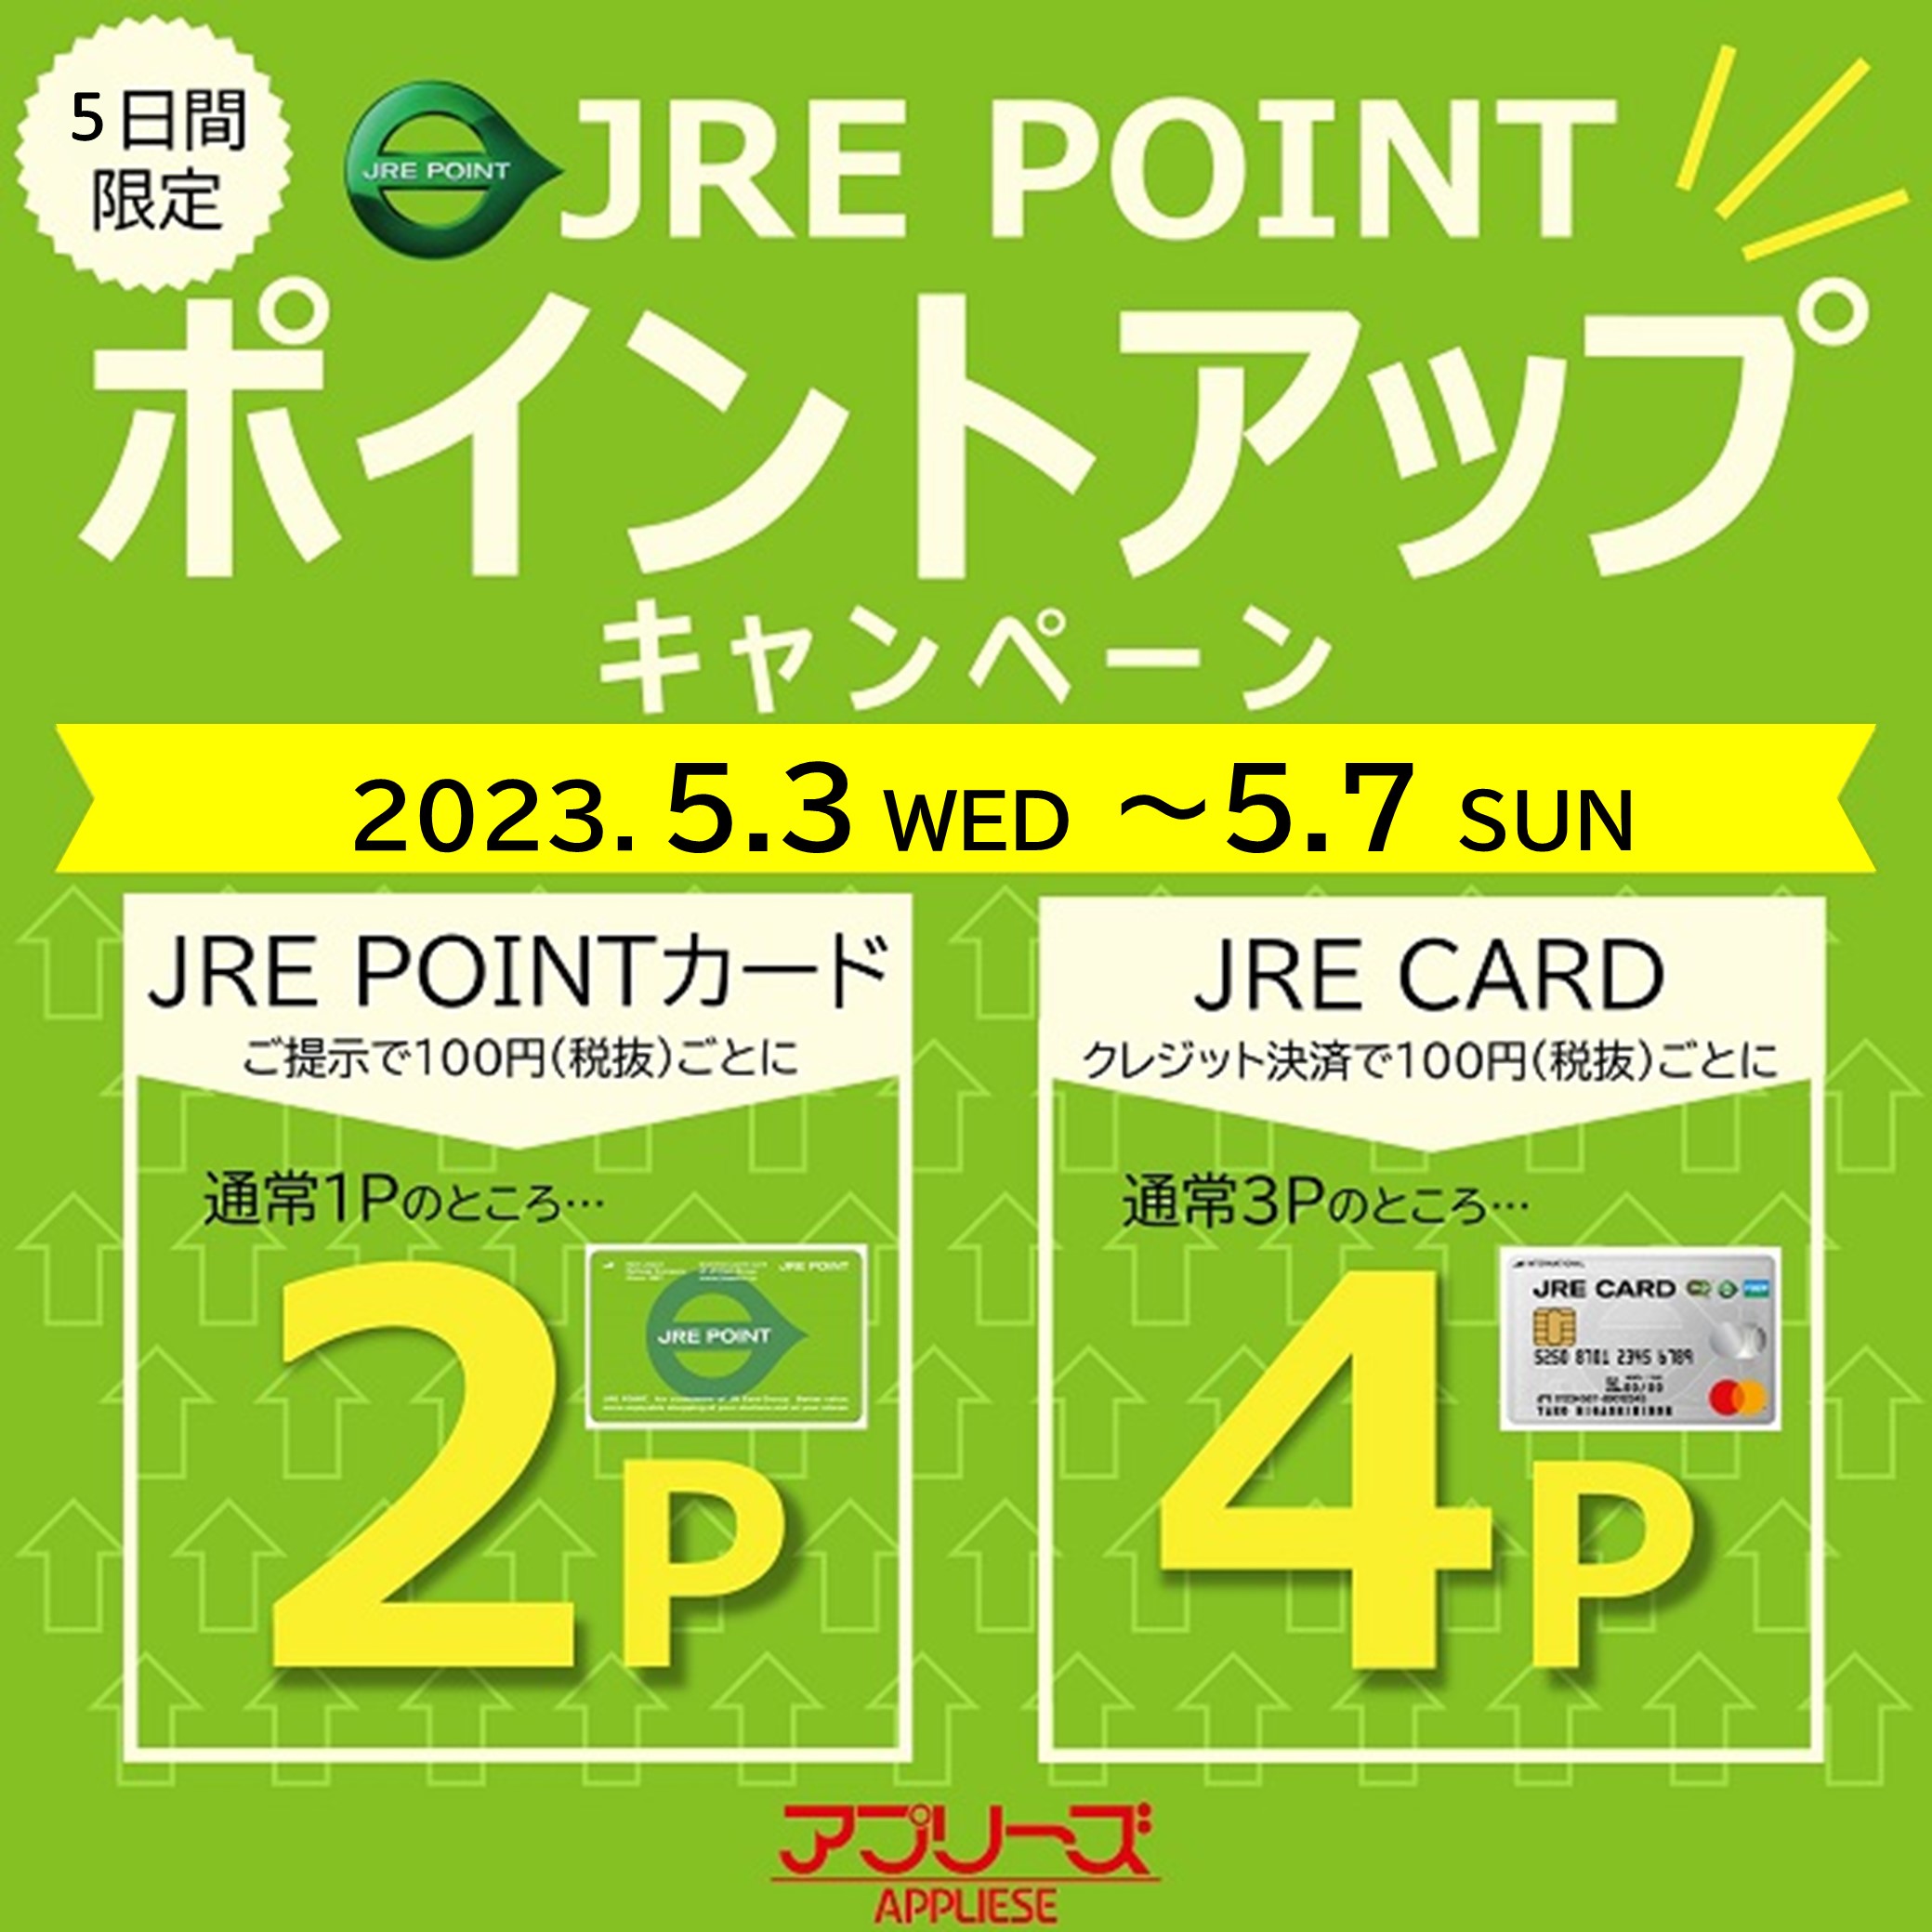 【終了しました】アプリーズ限定!! JRE POINT ポイントアップキャンペーン開催!